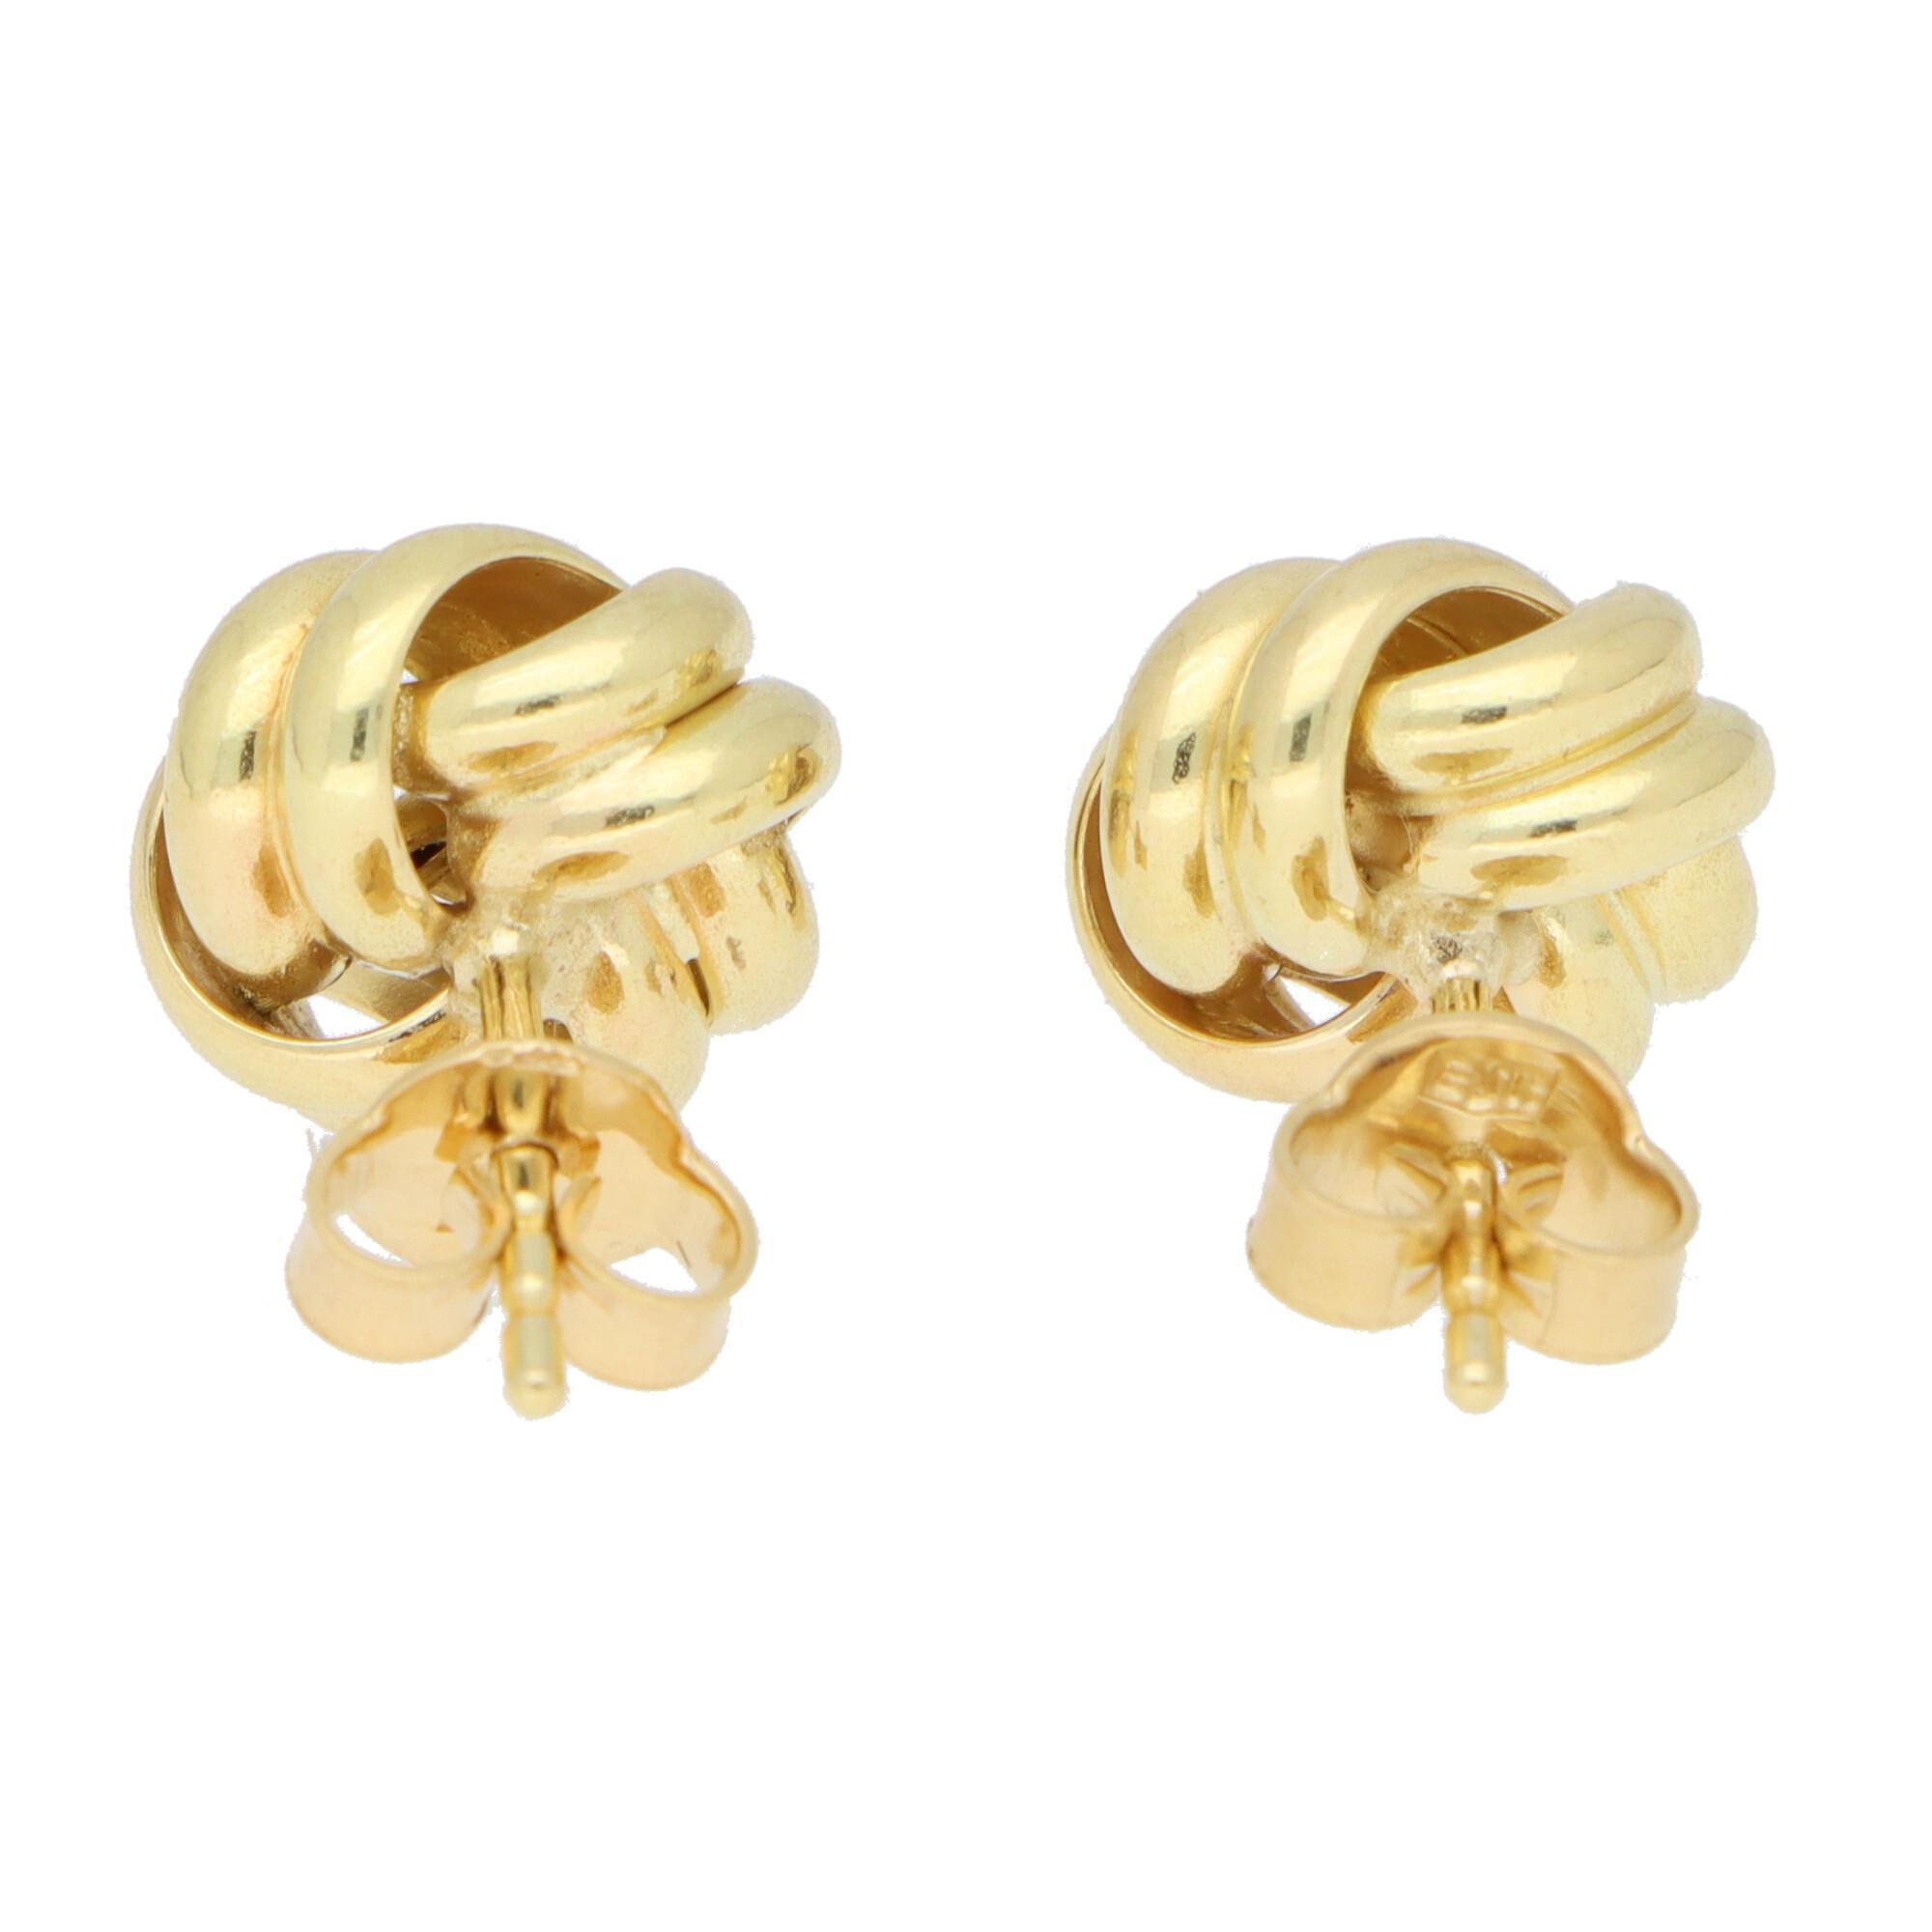 Woven Knot Stud Earrings Set in 18k Yellow Gold 1